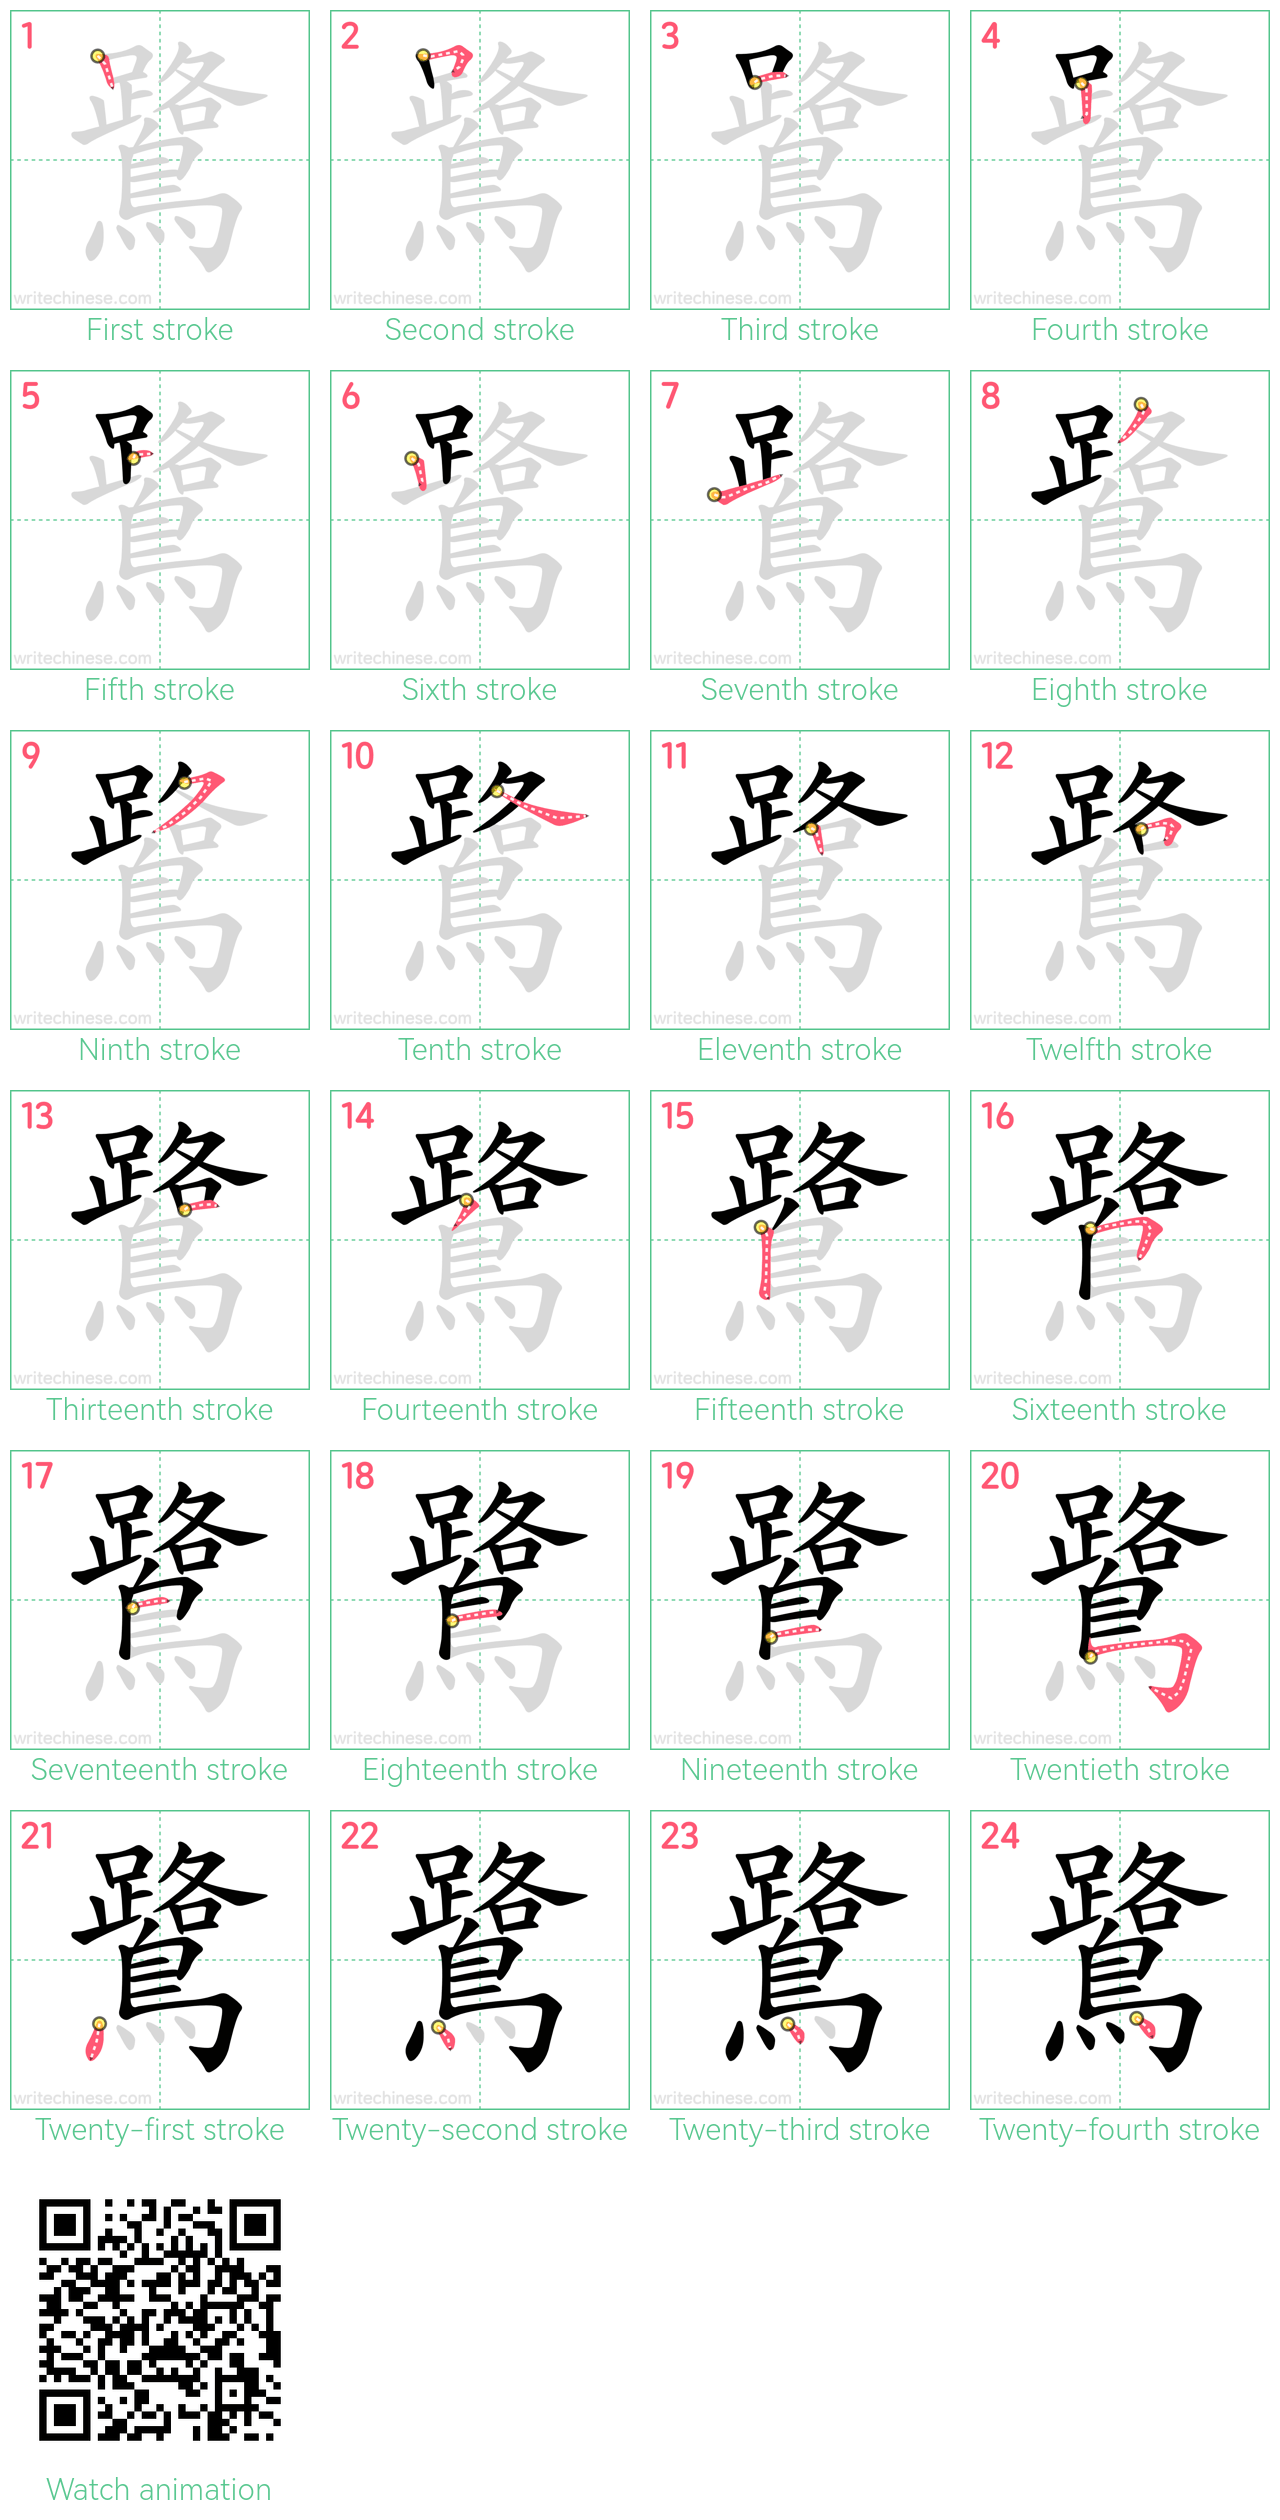 鷺 step-by-step stroke order diagrams